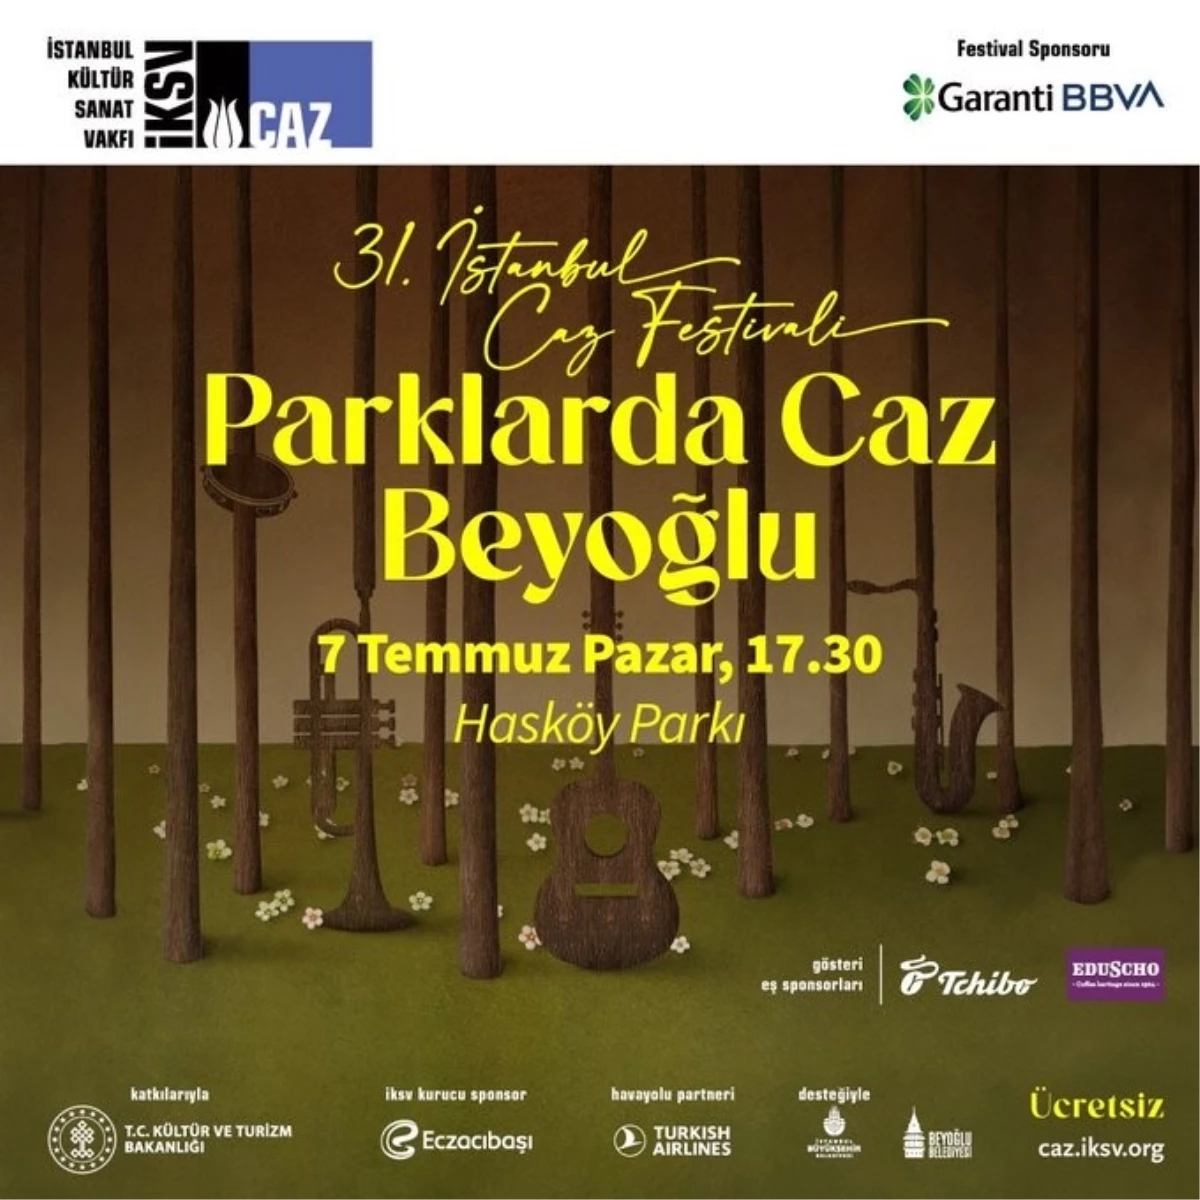 İstanbul Caz Festivali’nde Parklarda Caz Beyoğlu konserleri düzenlenecek